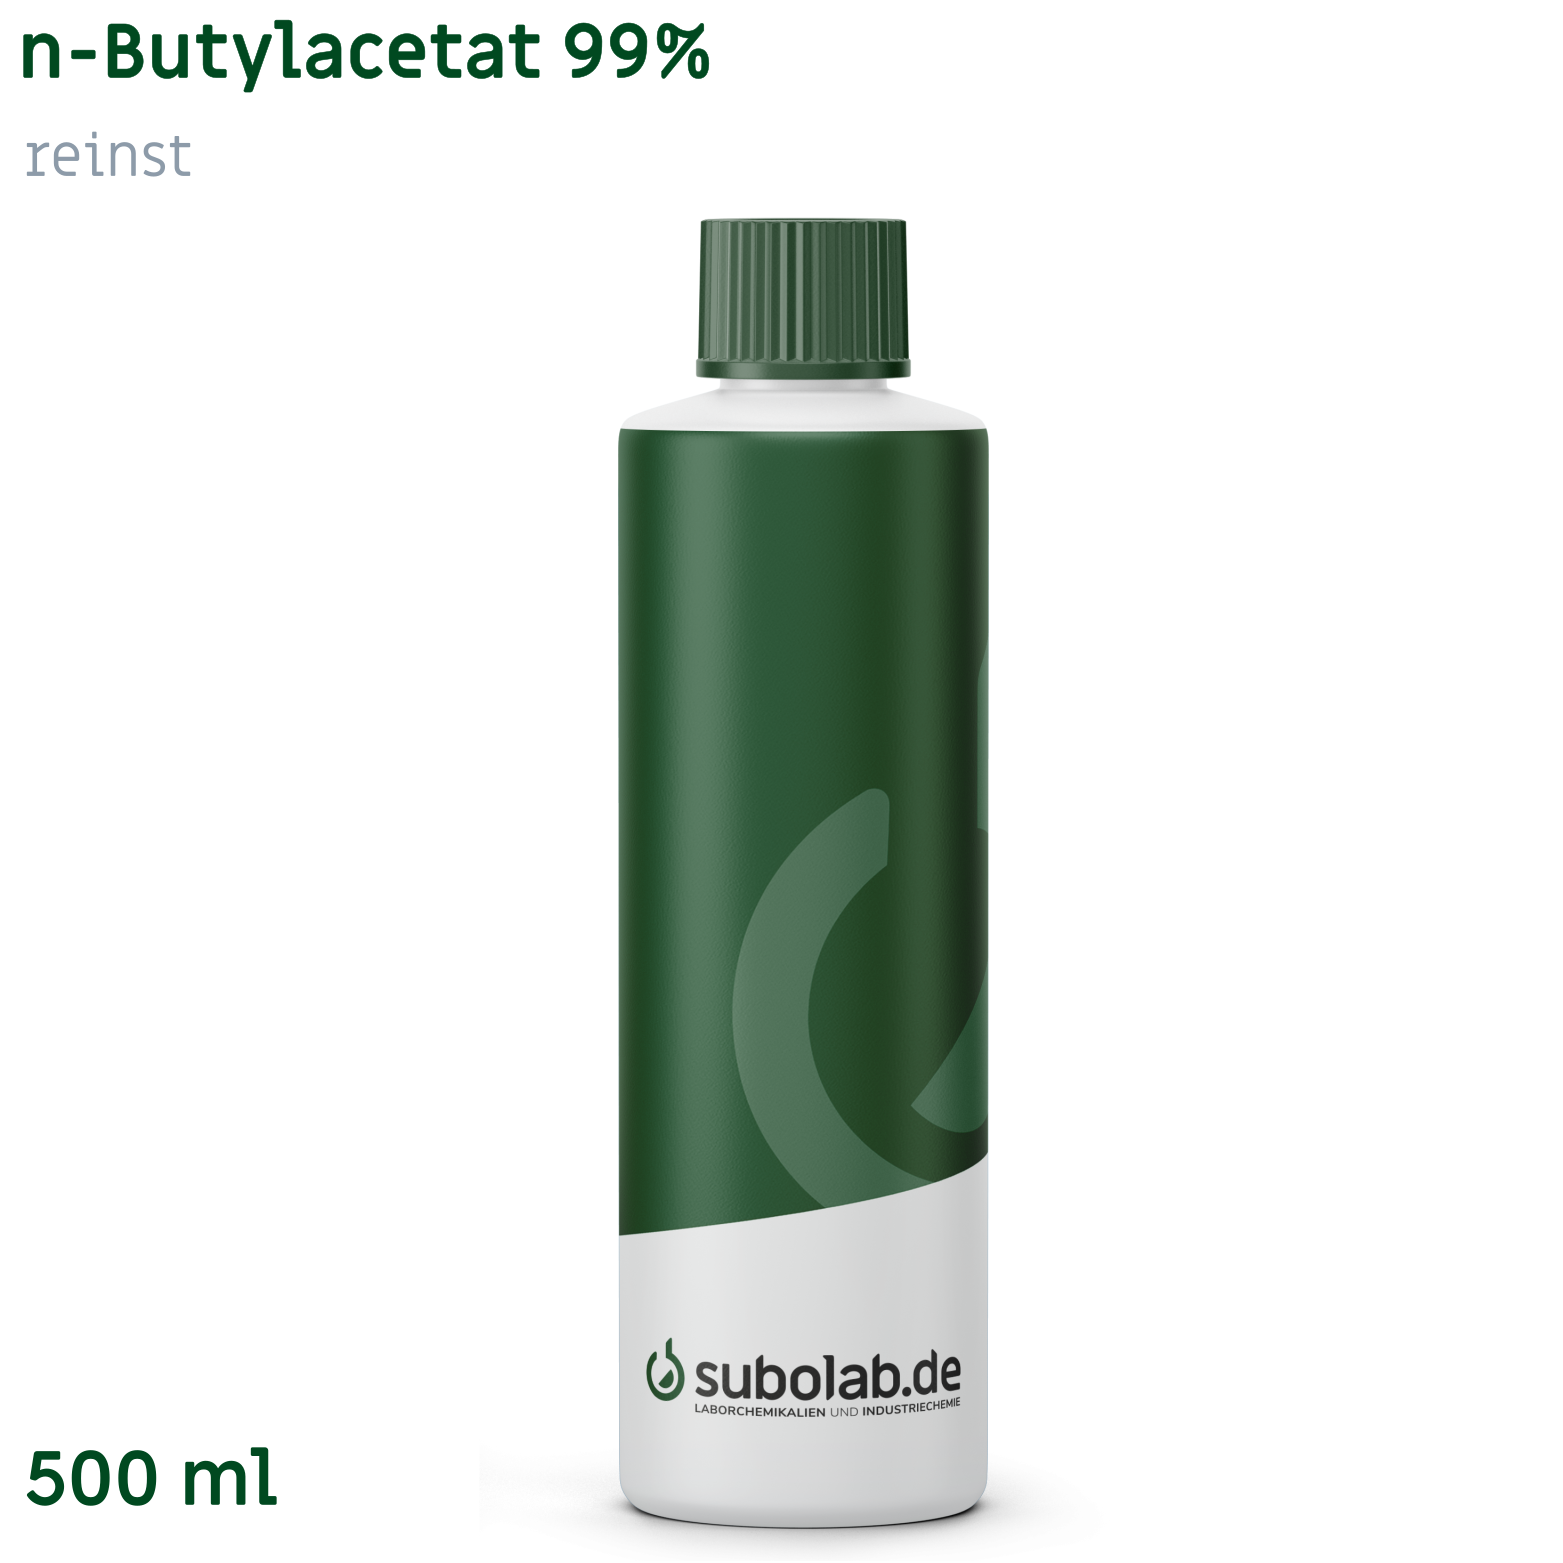 Bild von n-Butylacetat 99% reinst (500 ml)